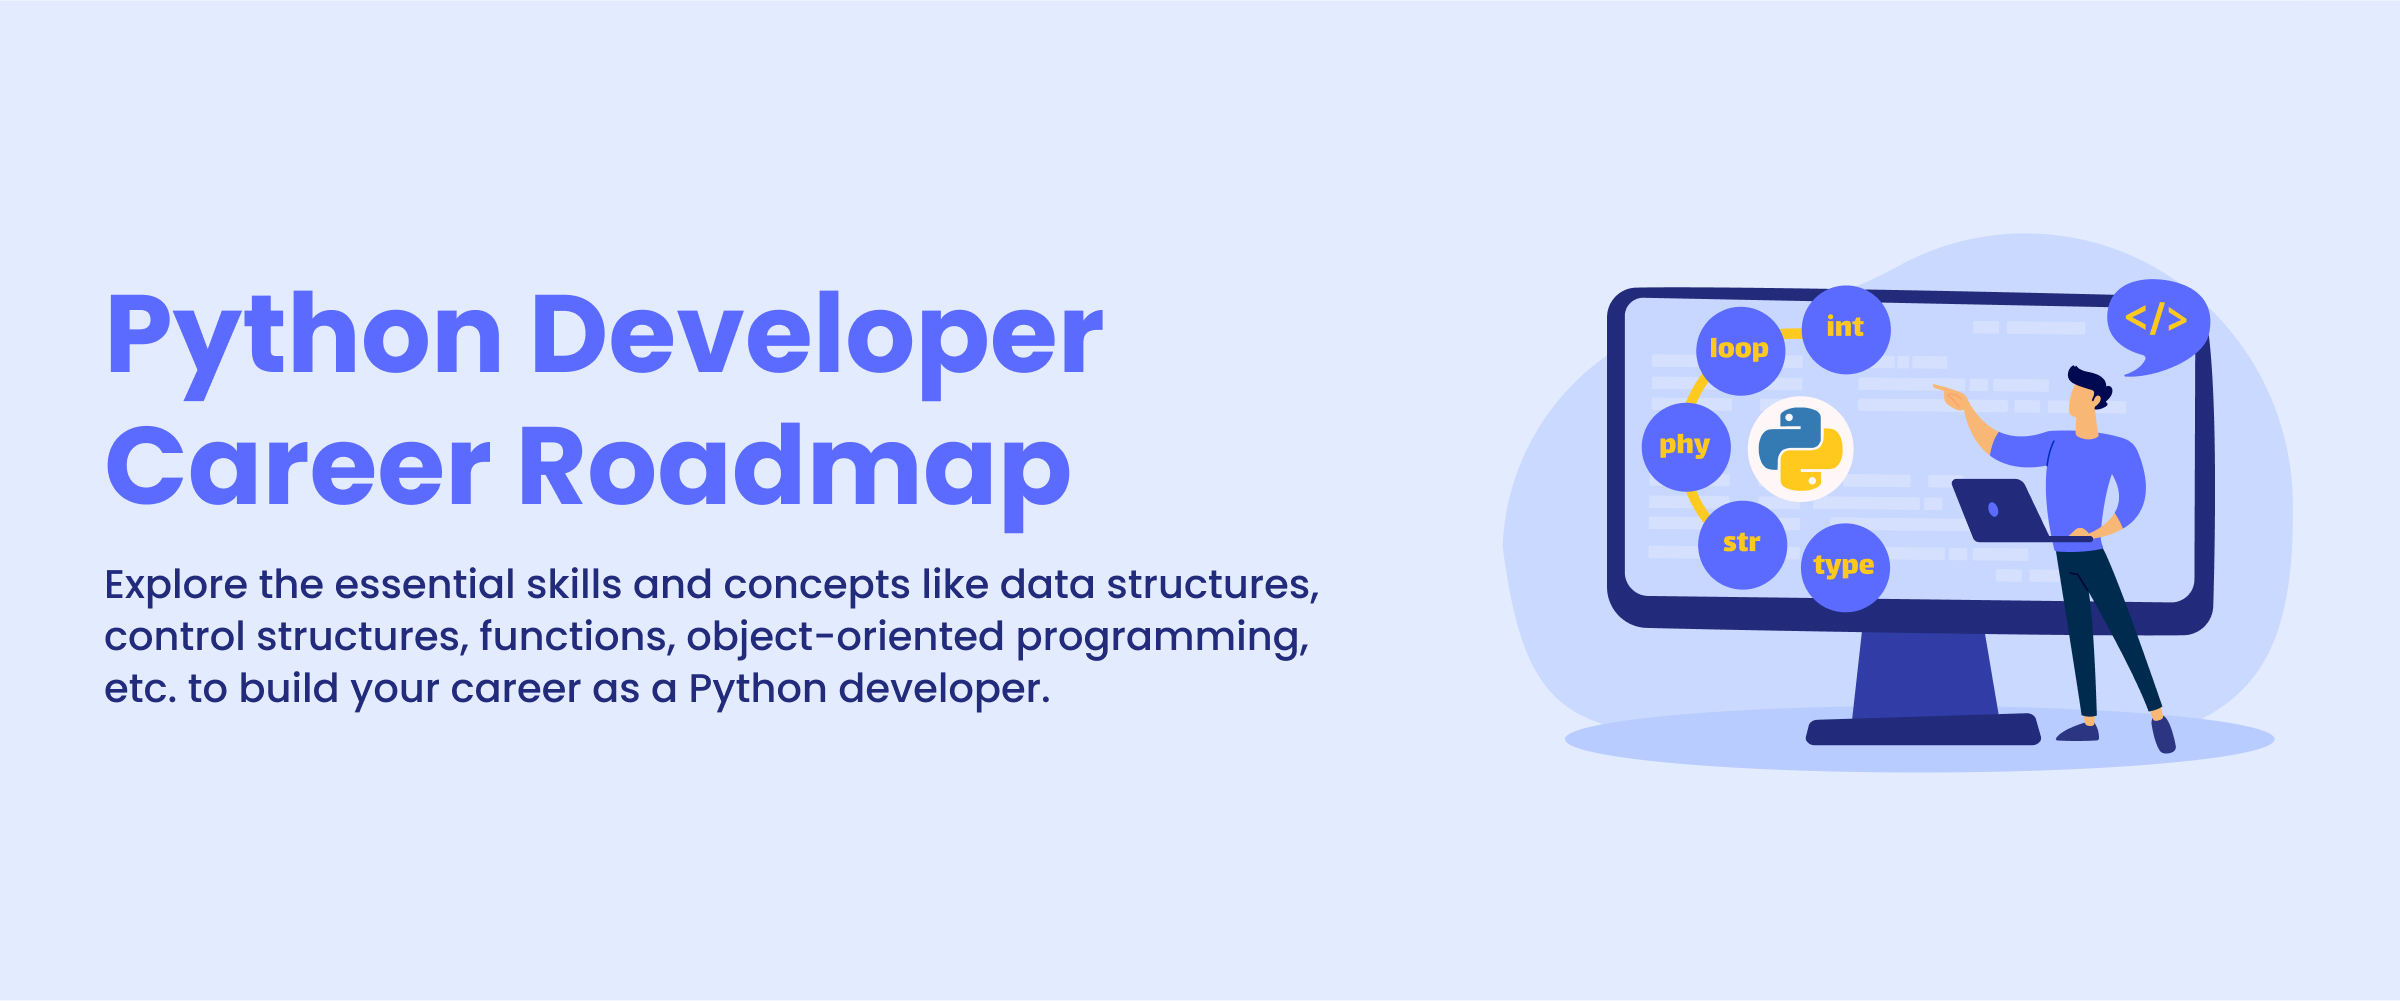 Python Developer Career Roadmap